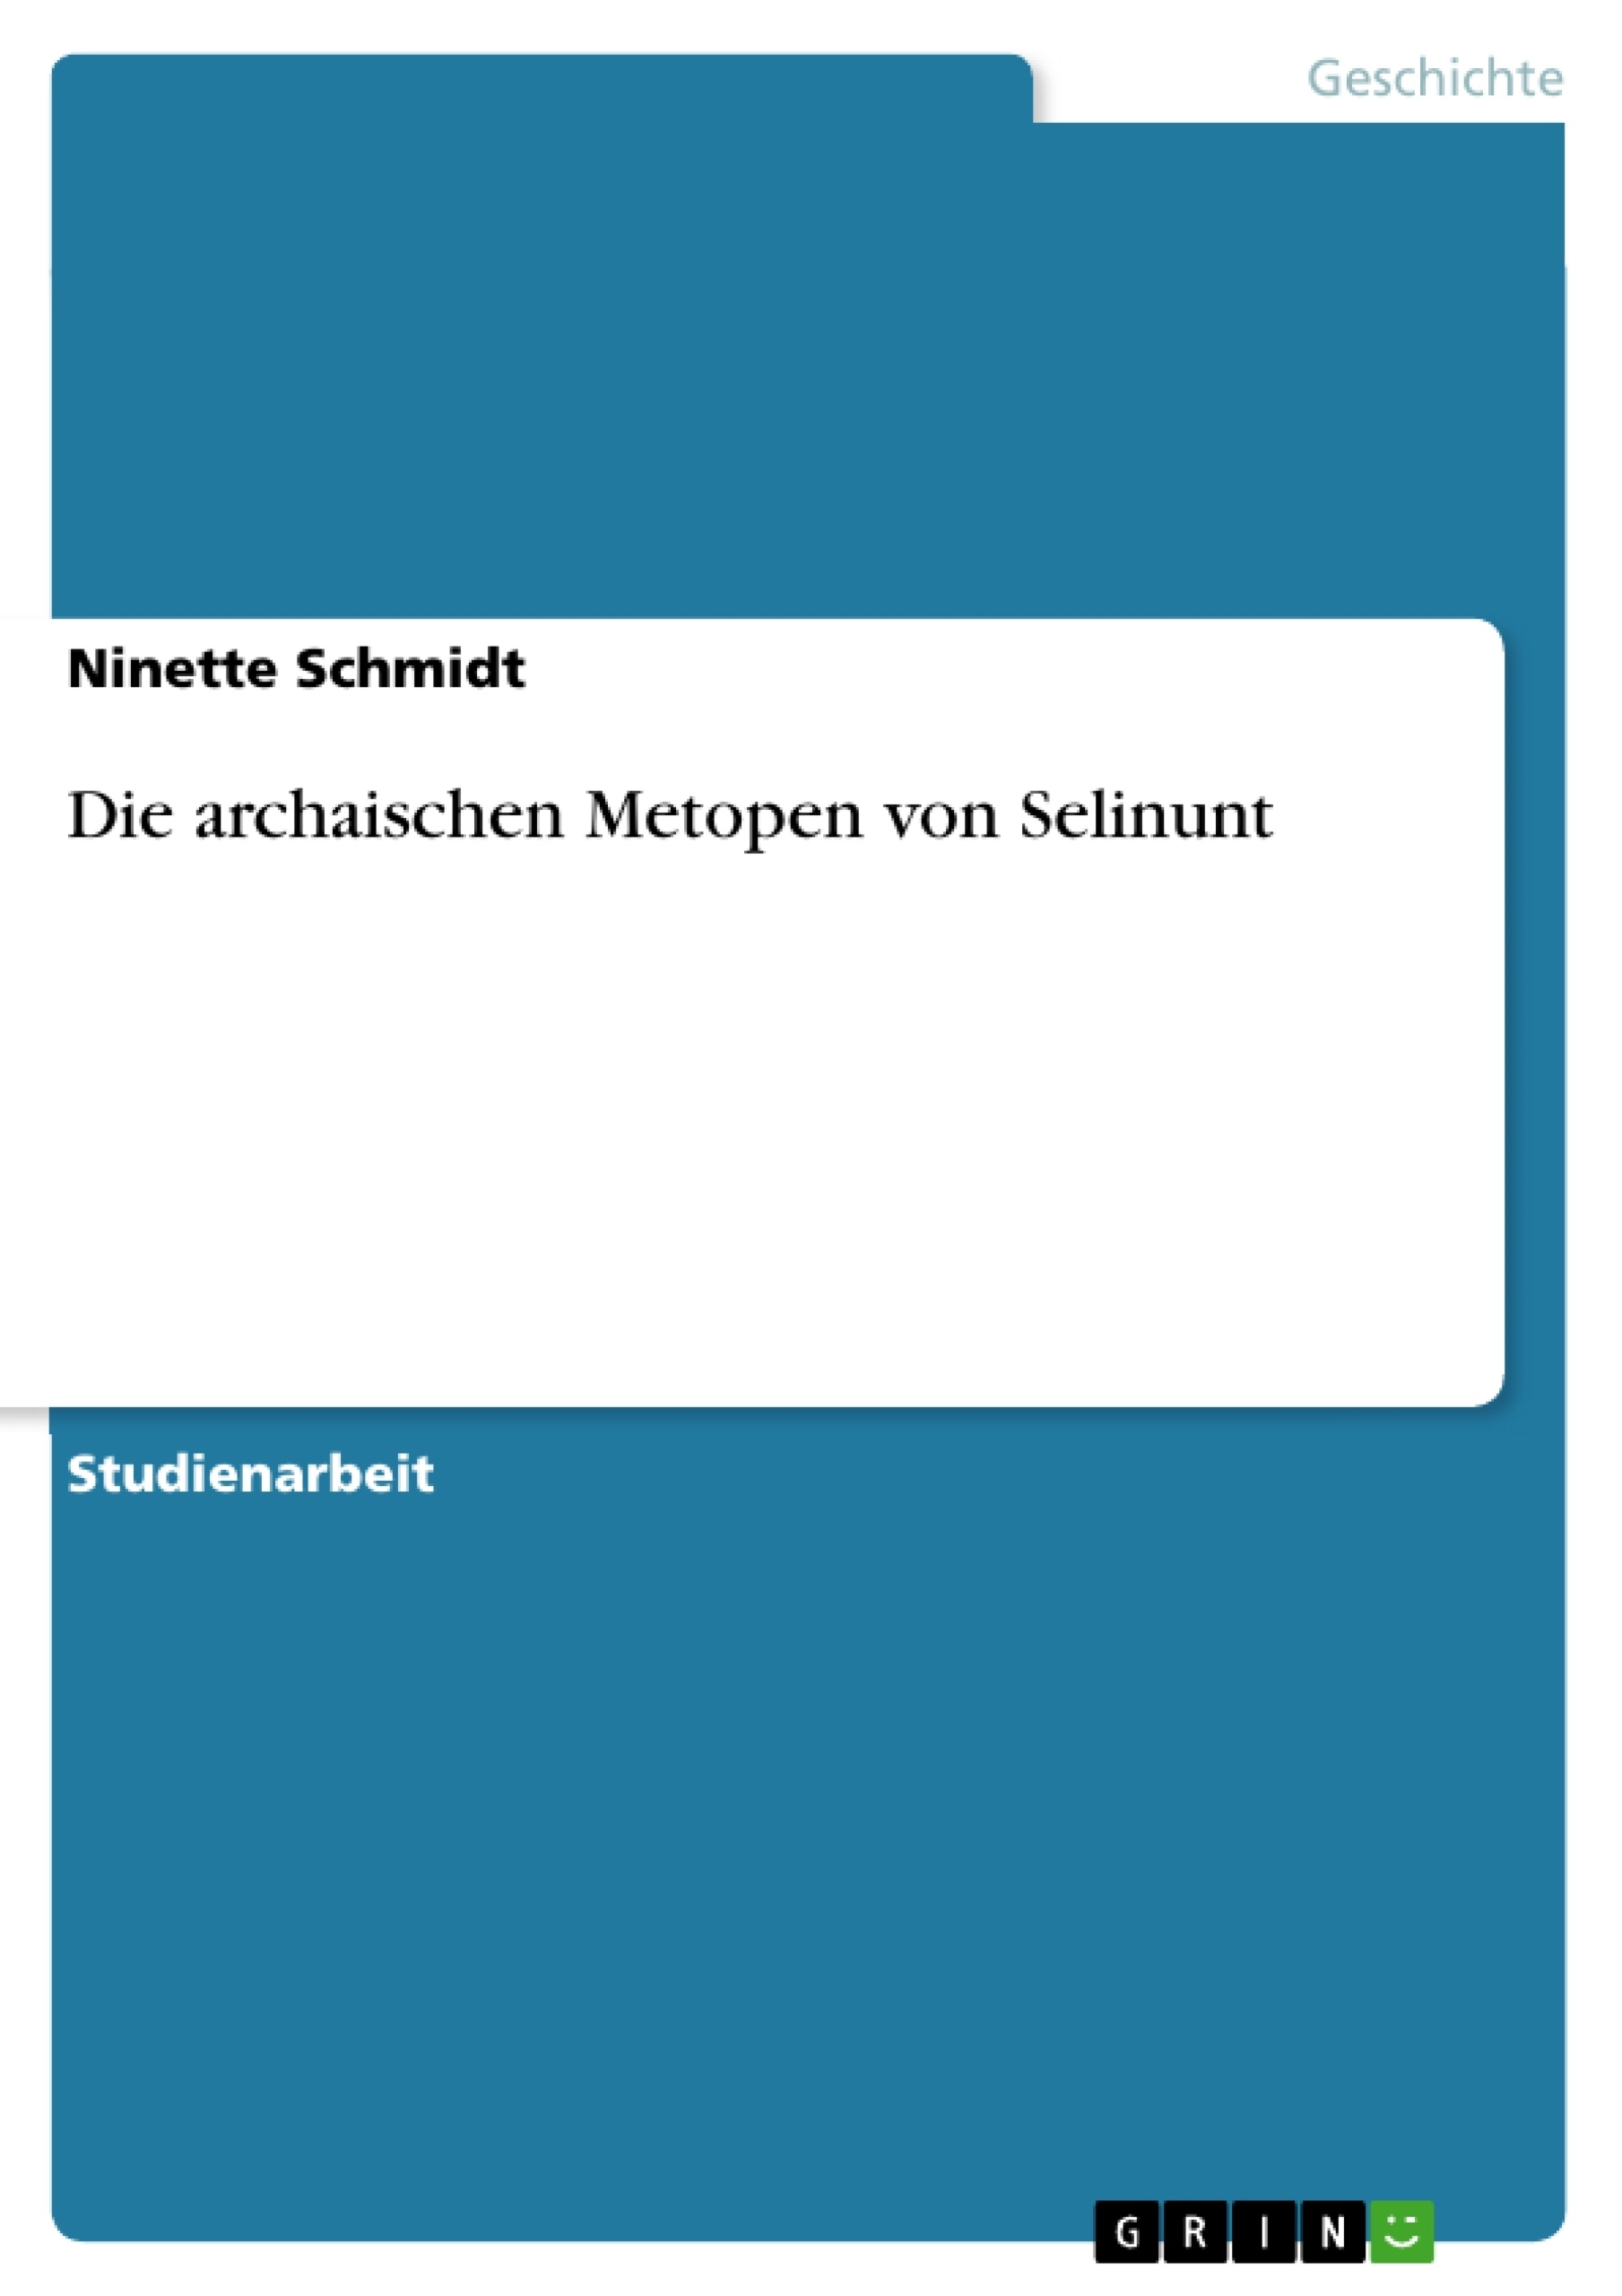 Título: Die archaischen Metopen von Selinunt